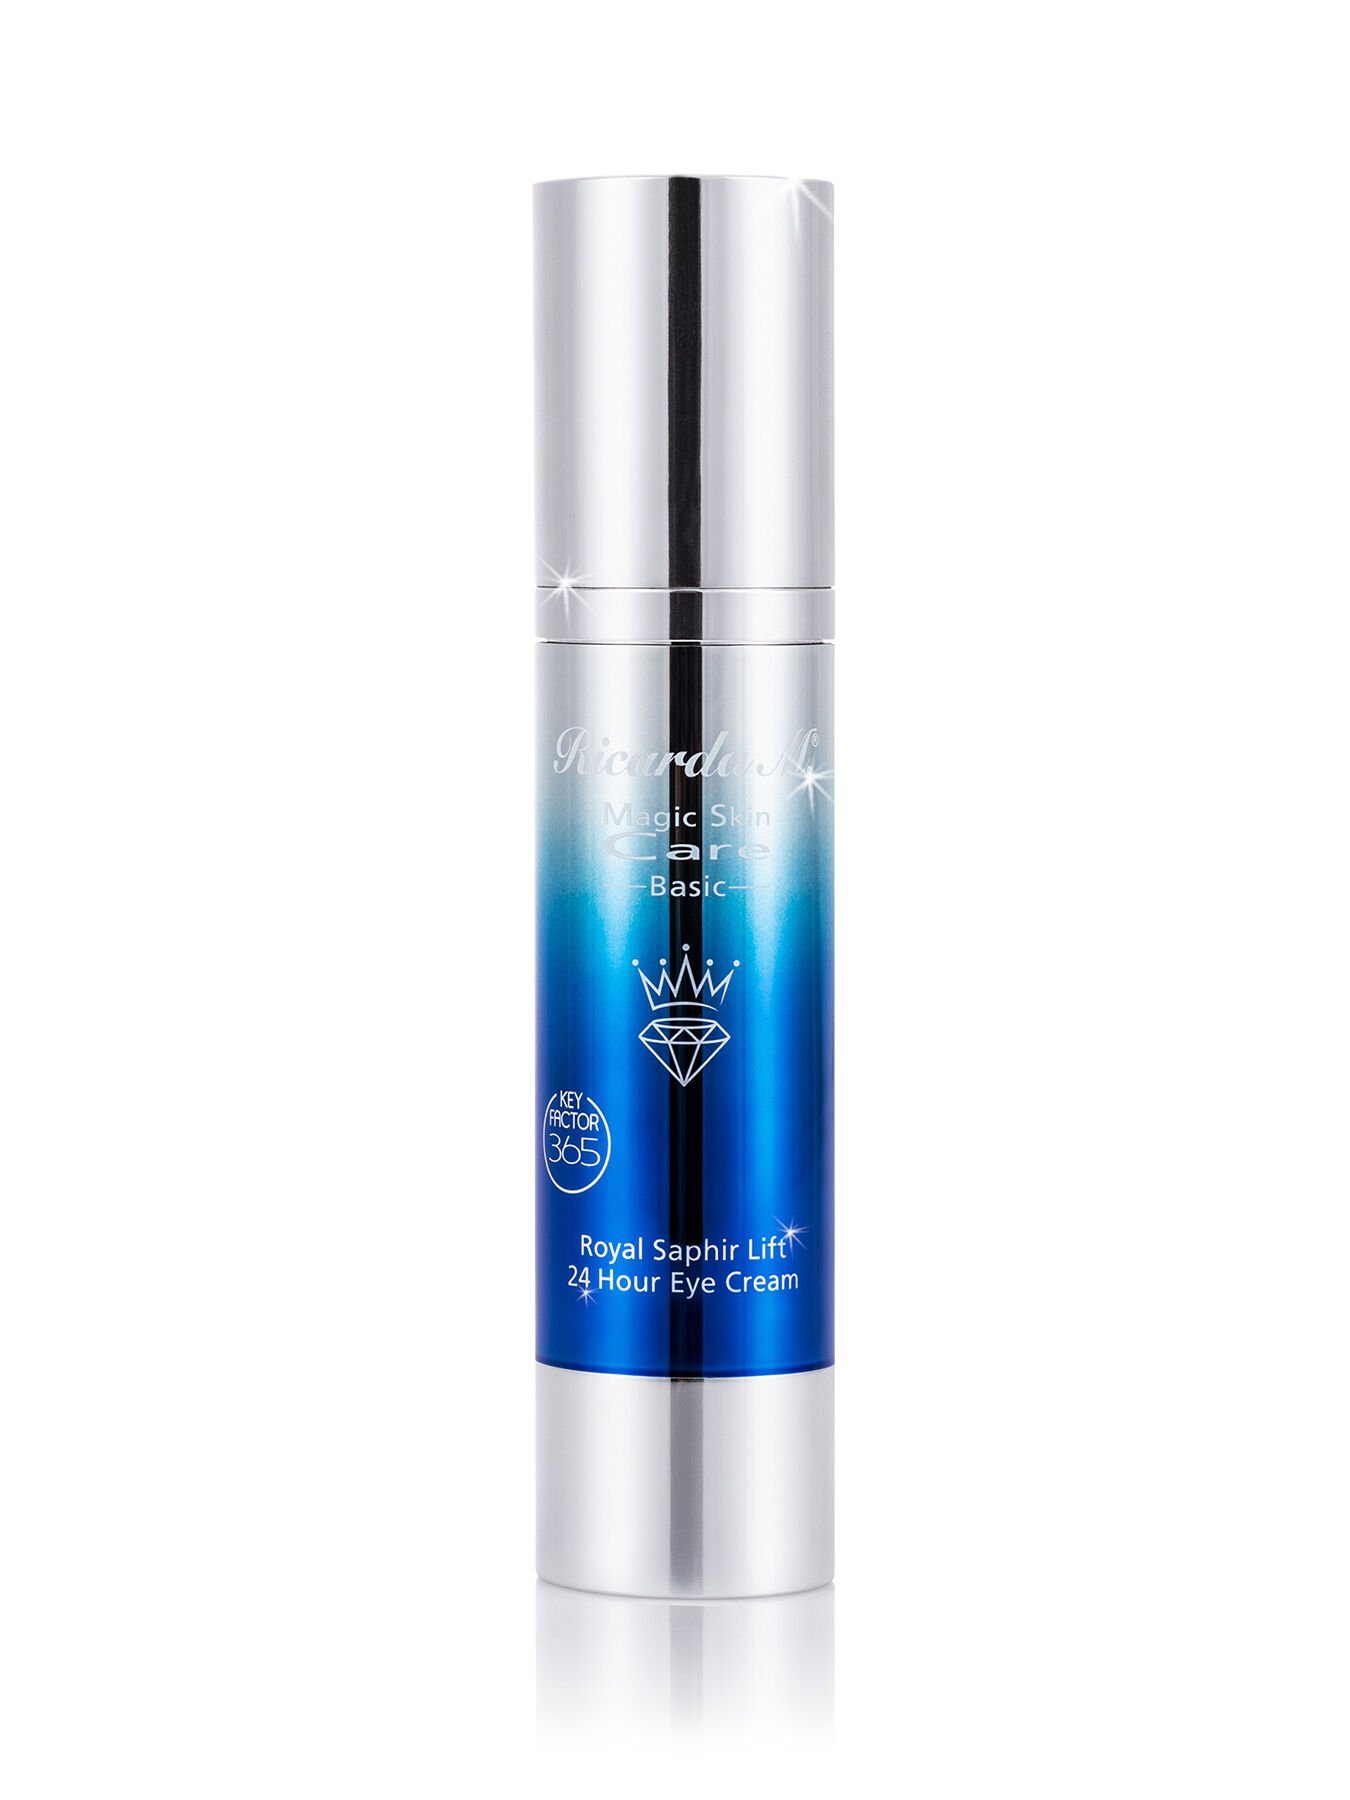 Royal "MSC Saphir, Hour KeyFactor365 Eye Cream", Ricarda Anti-Aging-Wirkstoff + mit Anti-Aging-Augencreme Hautverjüngung Saphir M. Royal 24 Lift